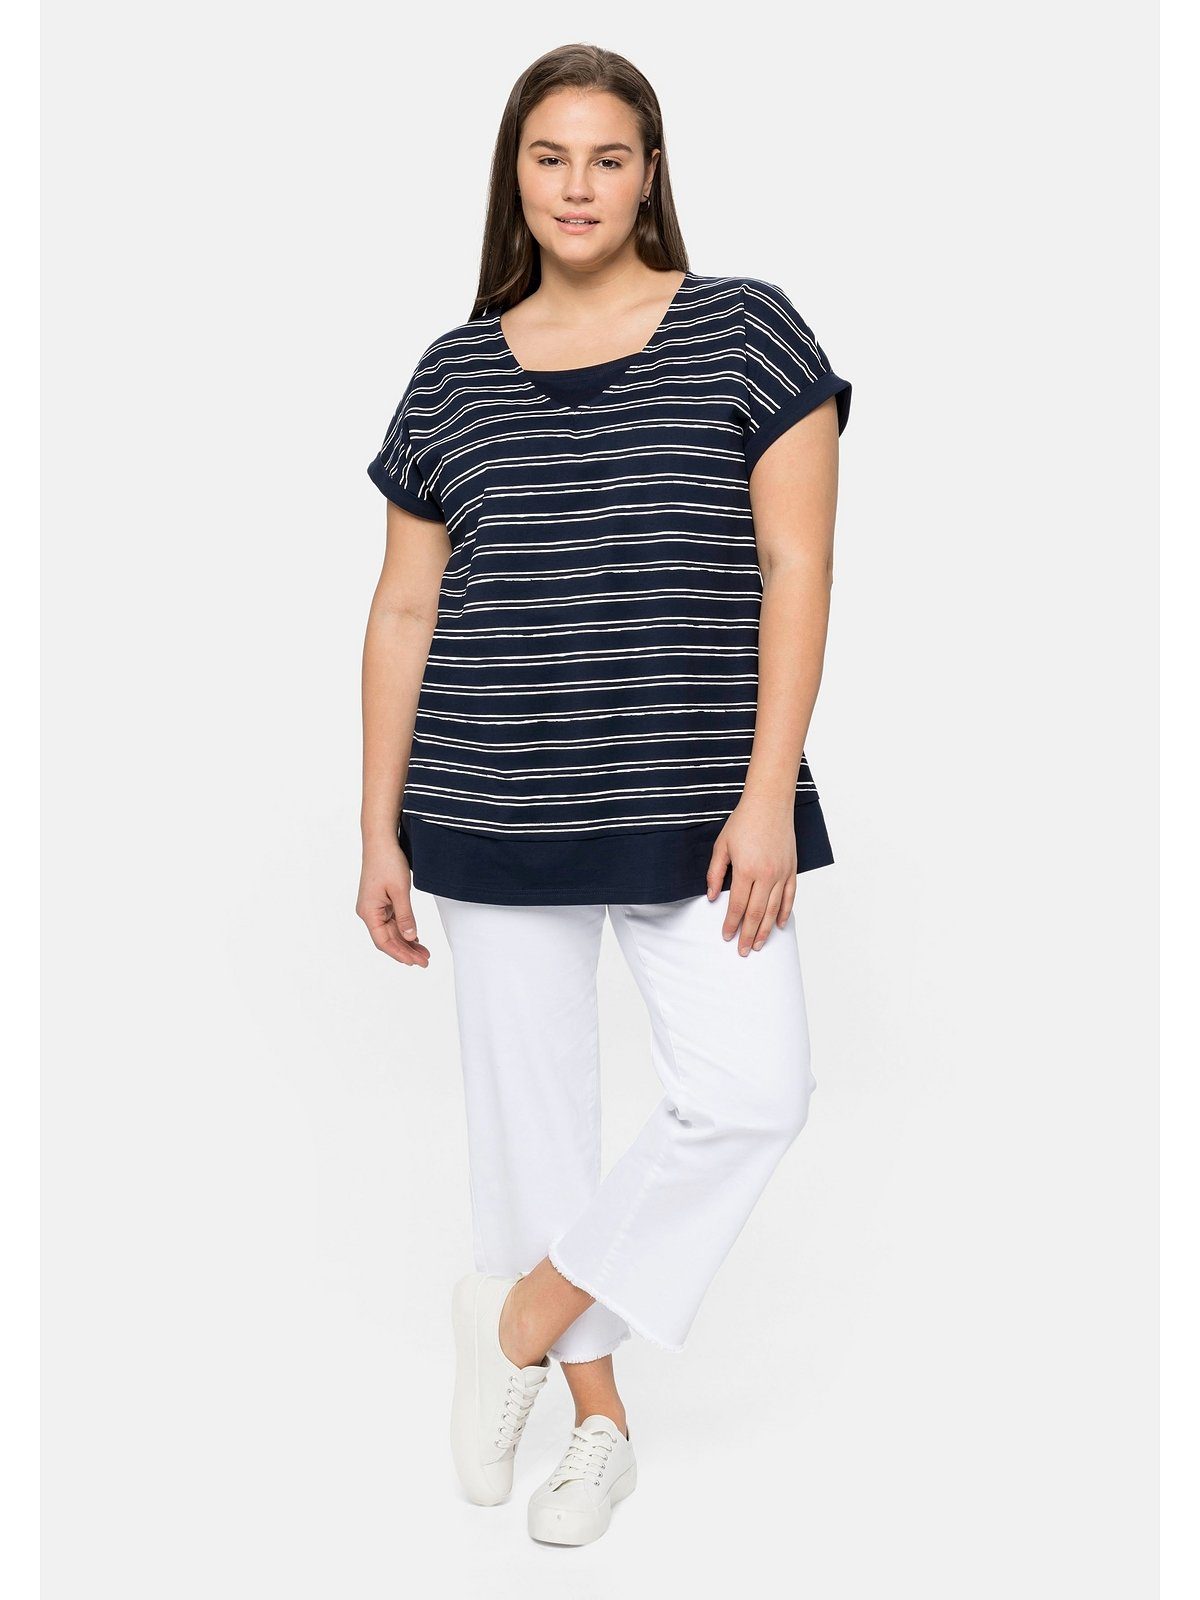 Baumwolle Große aus Lagenlook, T-Shirt marine-weiß reiner Größen im Sheego